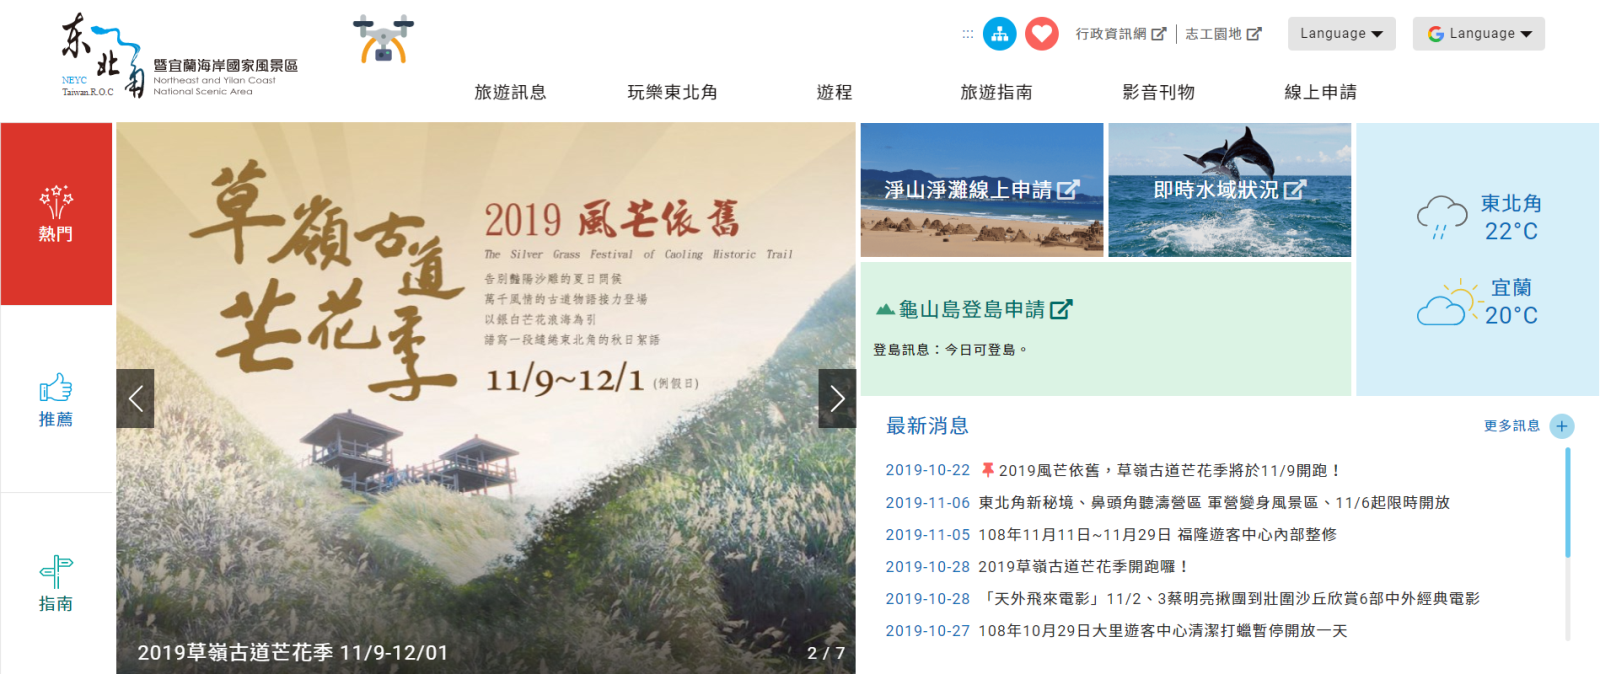 Новая версия веб-сайта предоставляет новую интеллектуальную туристическую услугу для всех местных и иностранных туристов.